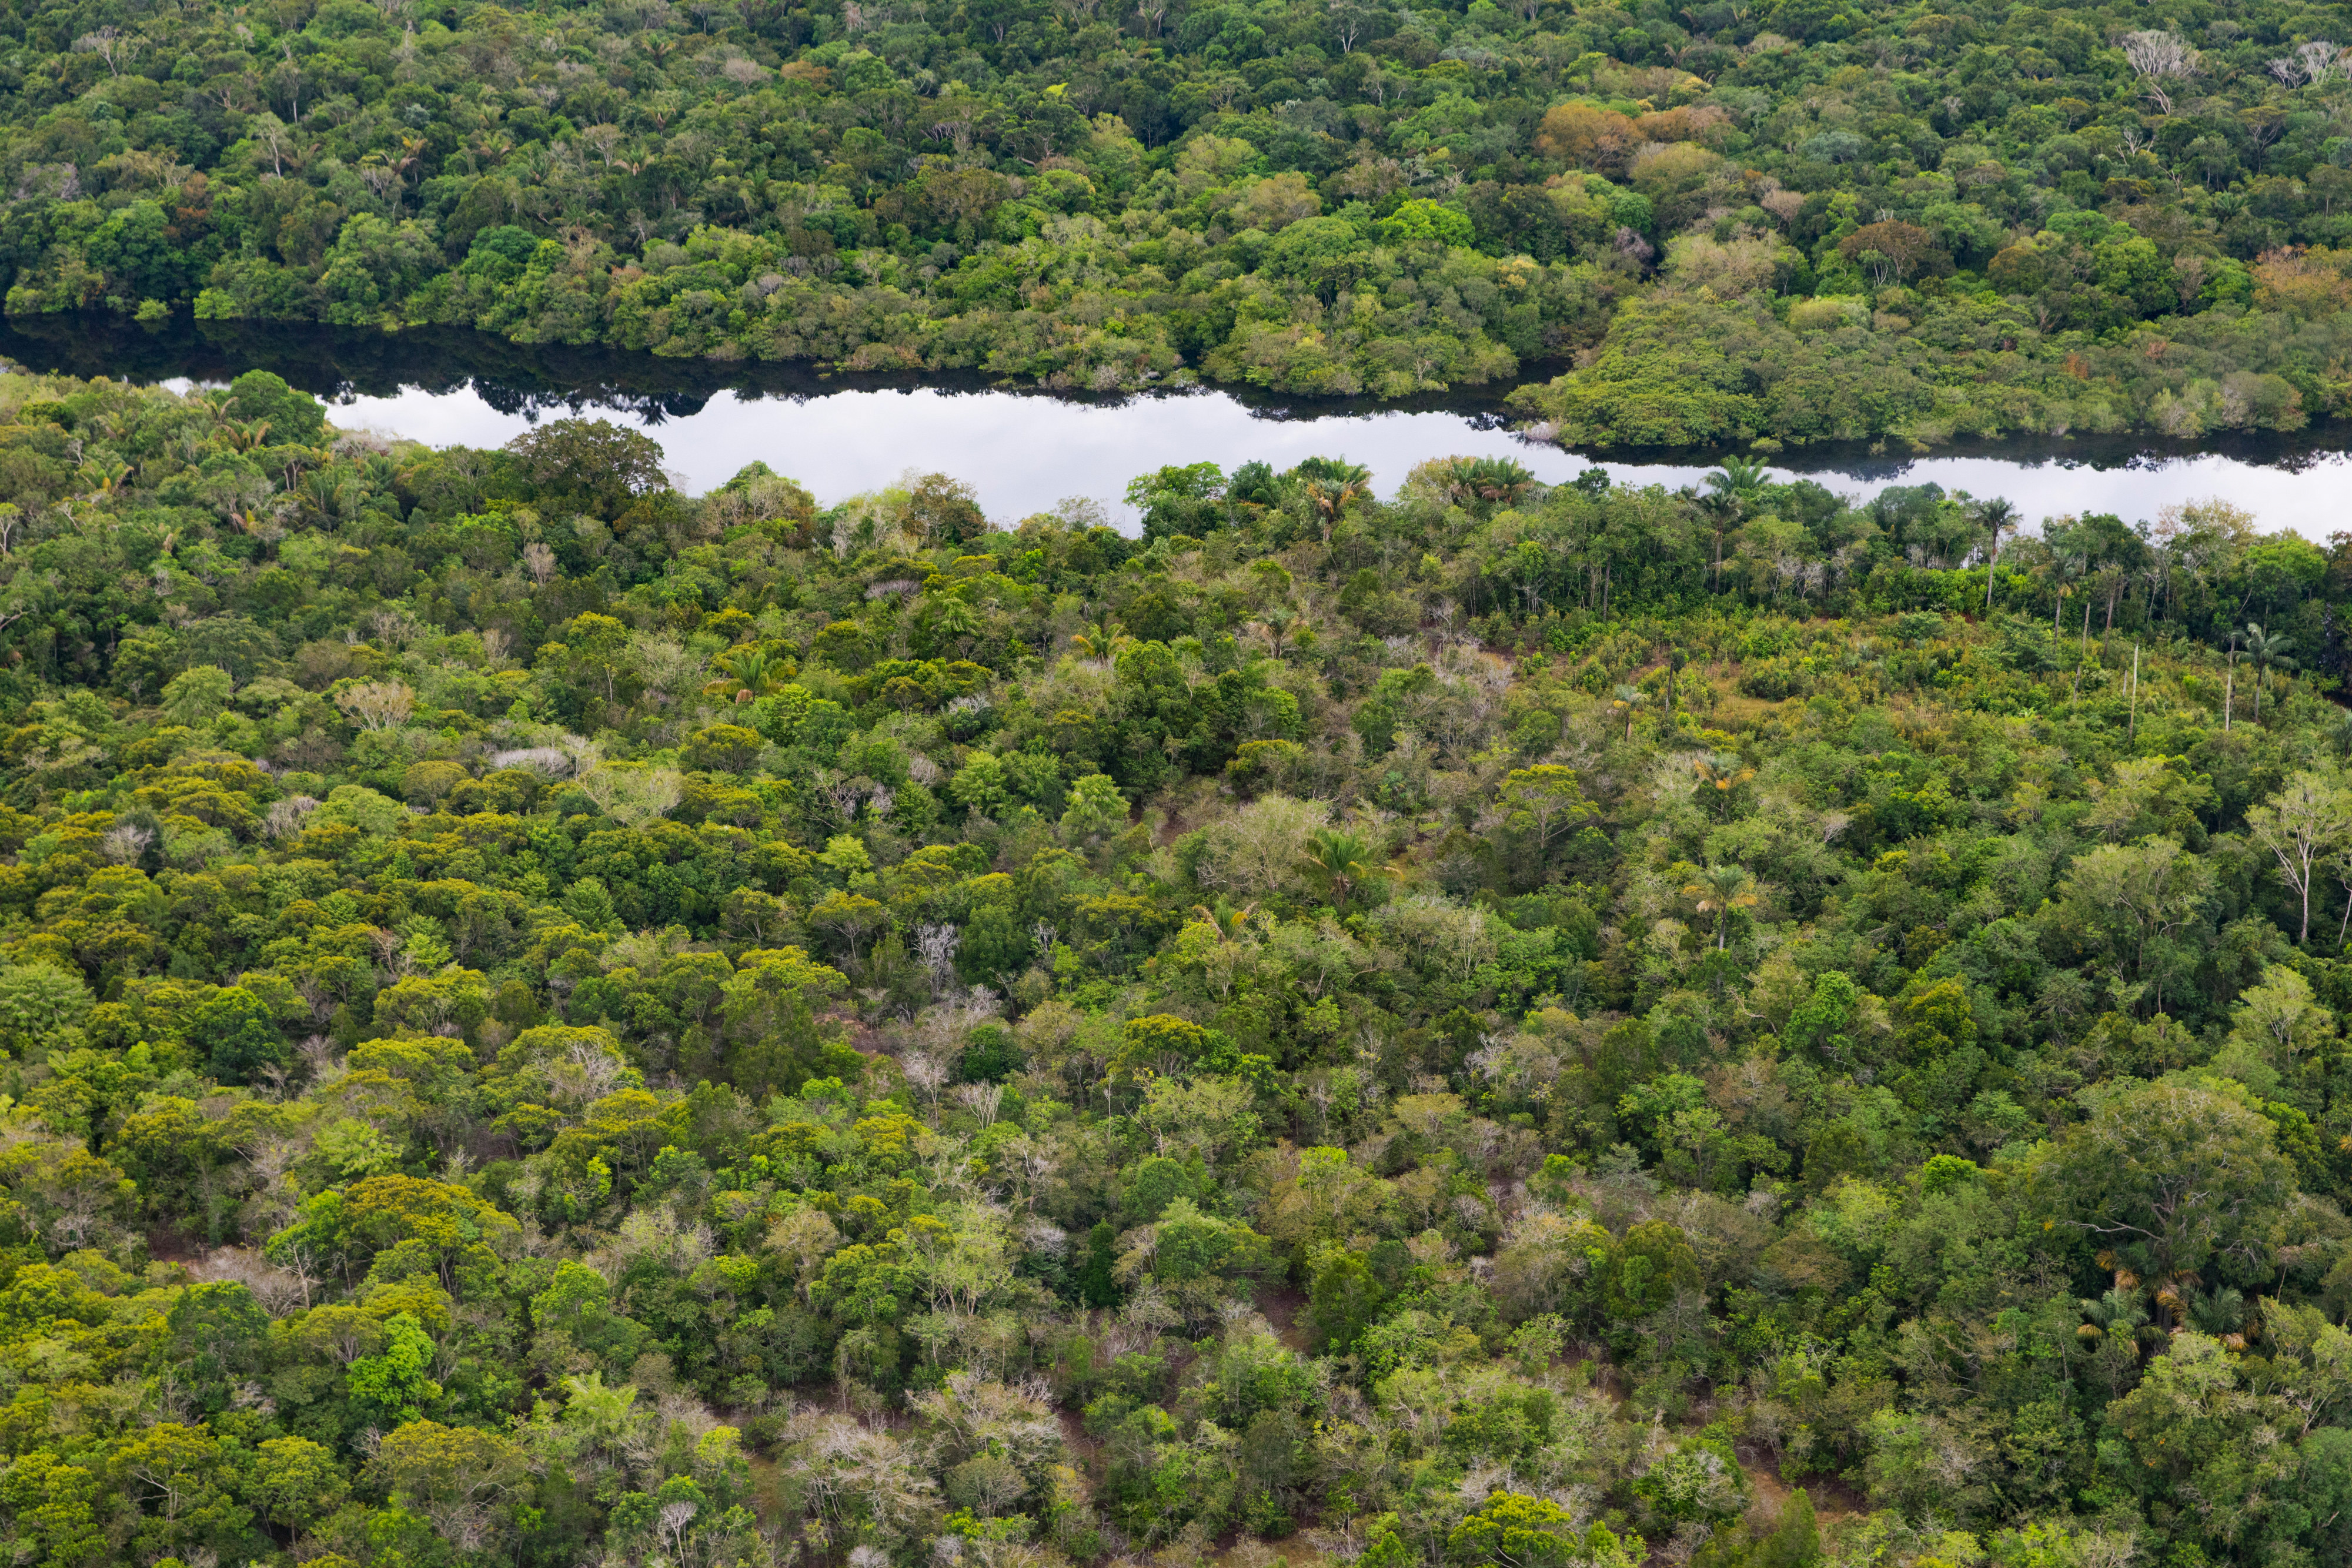 Rainforest near the Rio Negro in the Amazon region in Brazil